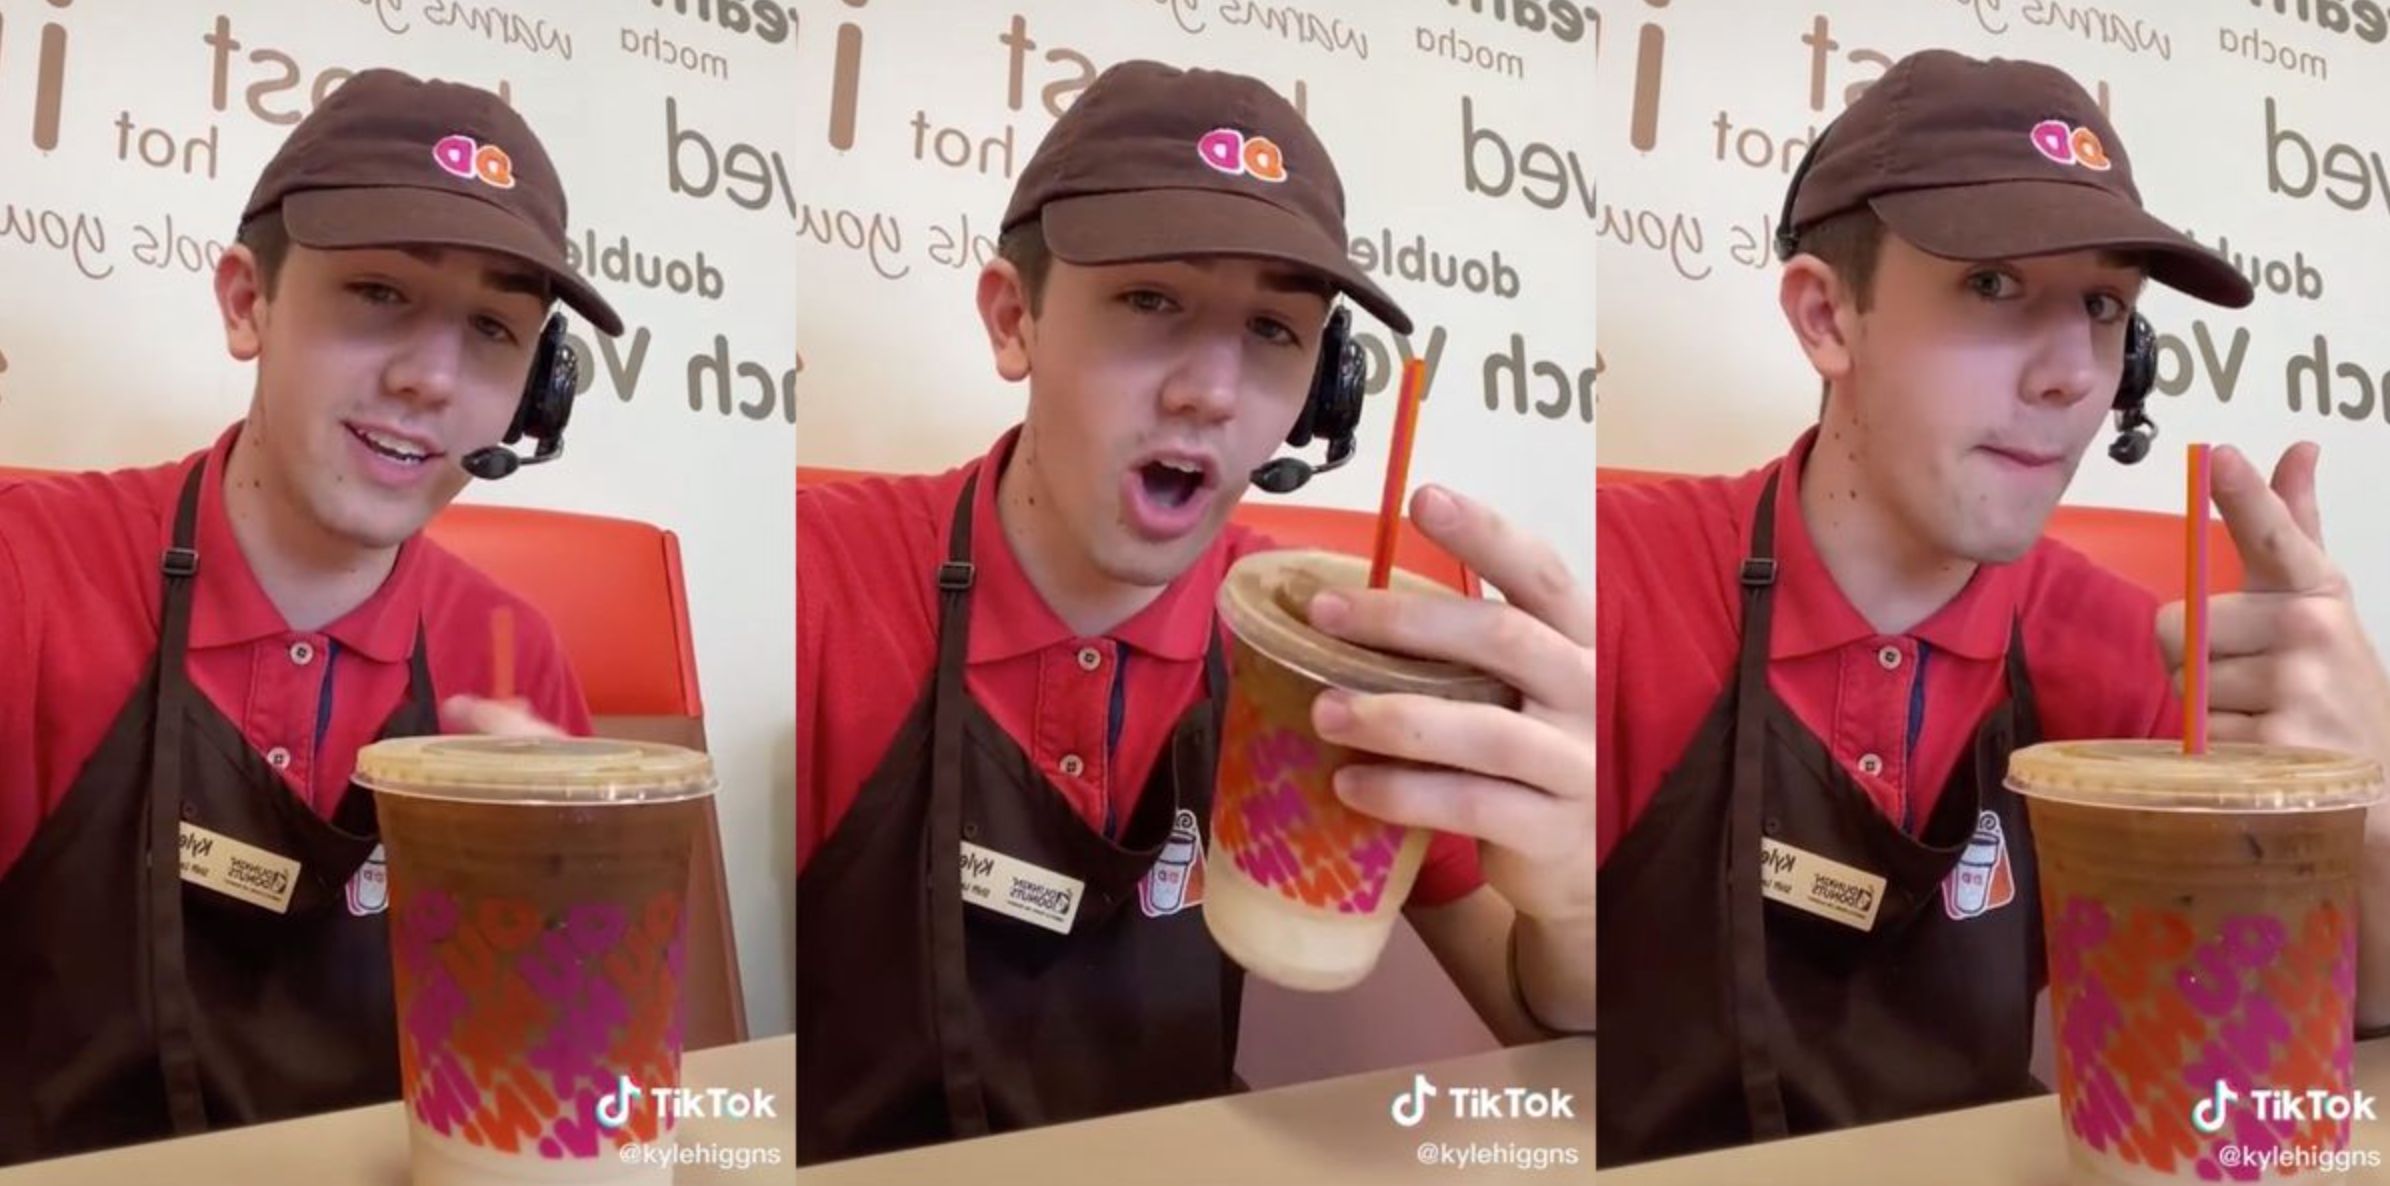 Como a Dunkin Donuts viralizou no Tik Tok engajando seus funcionários